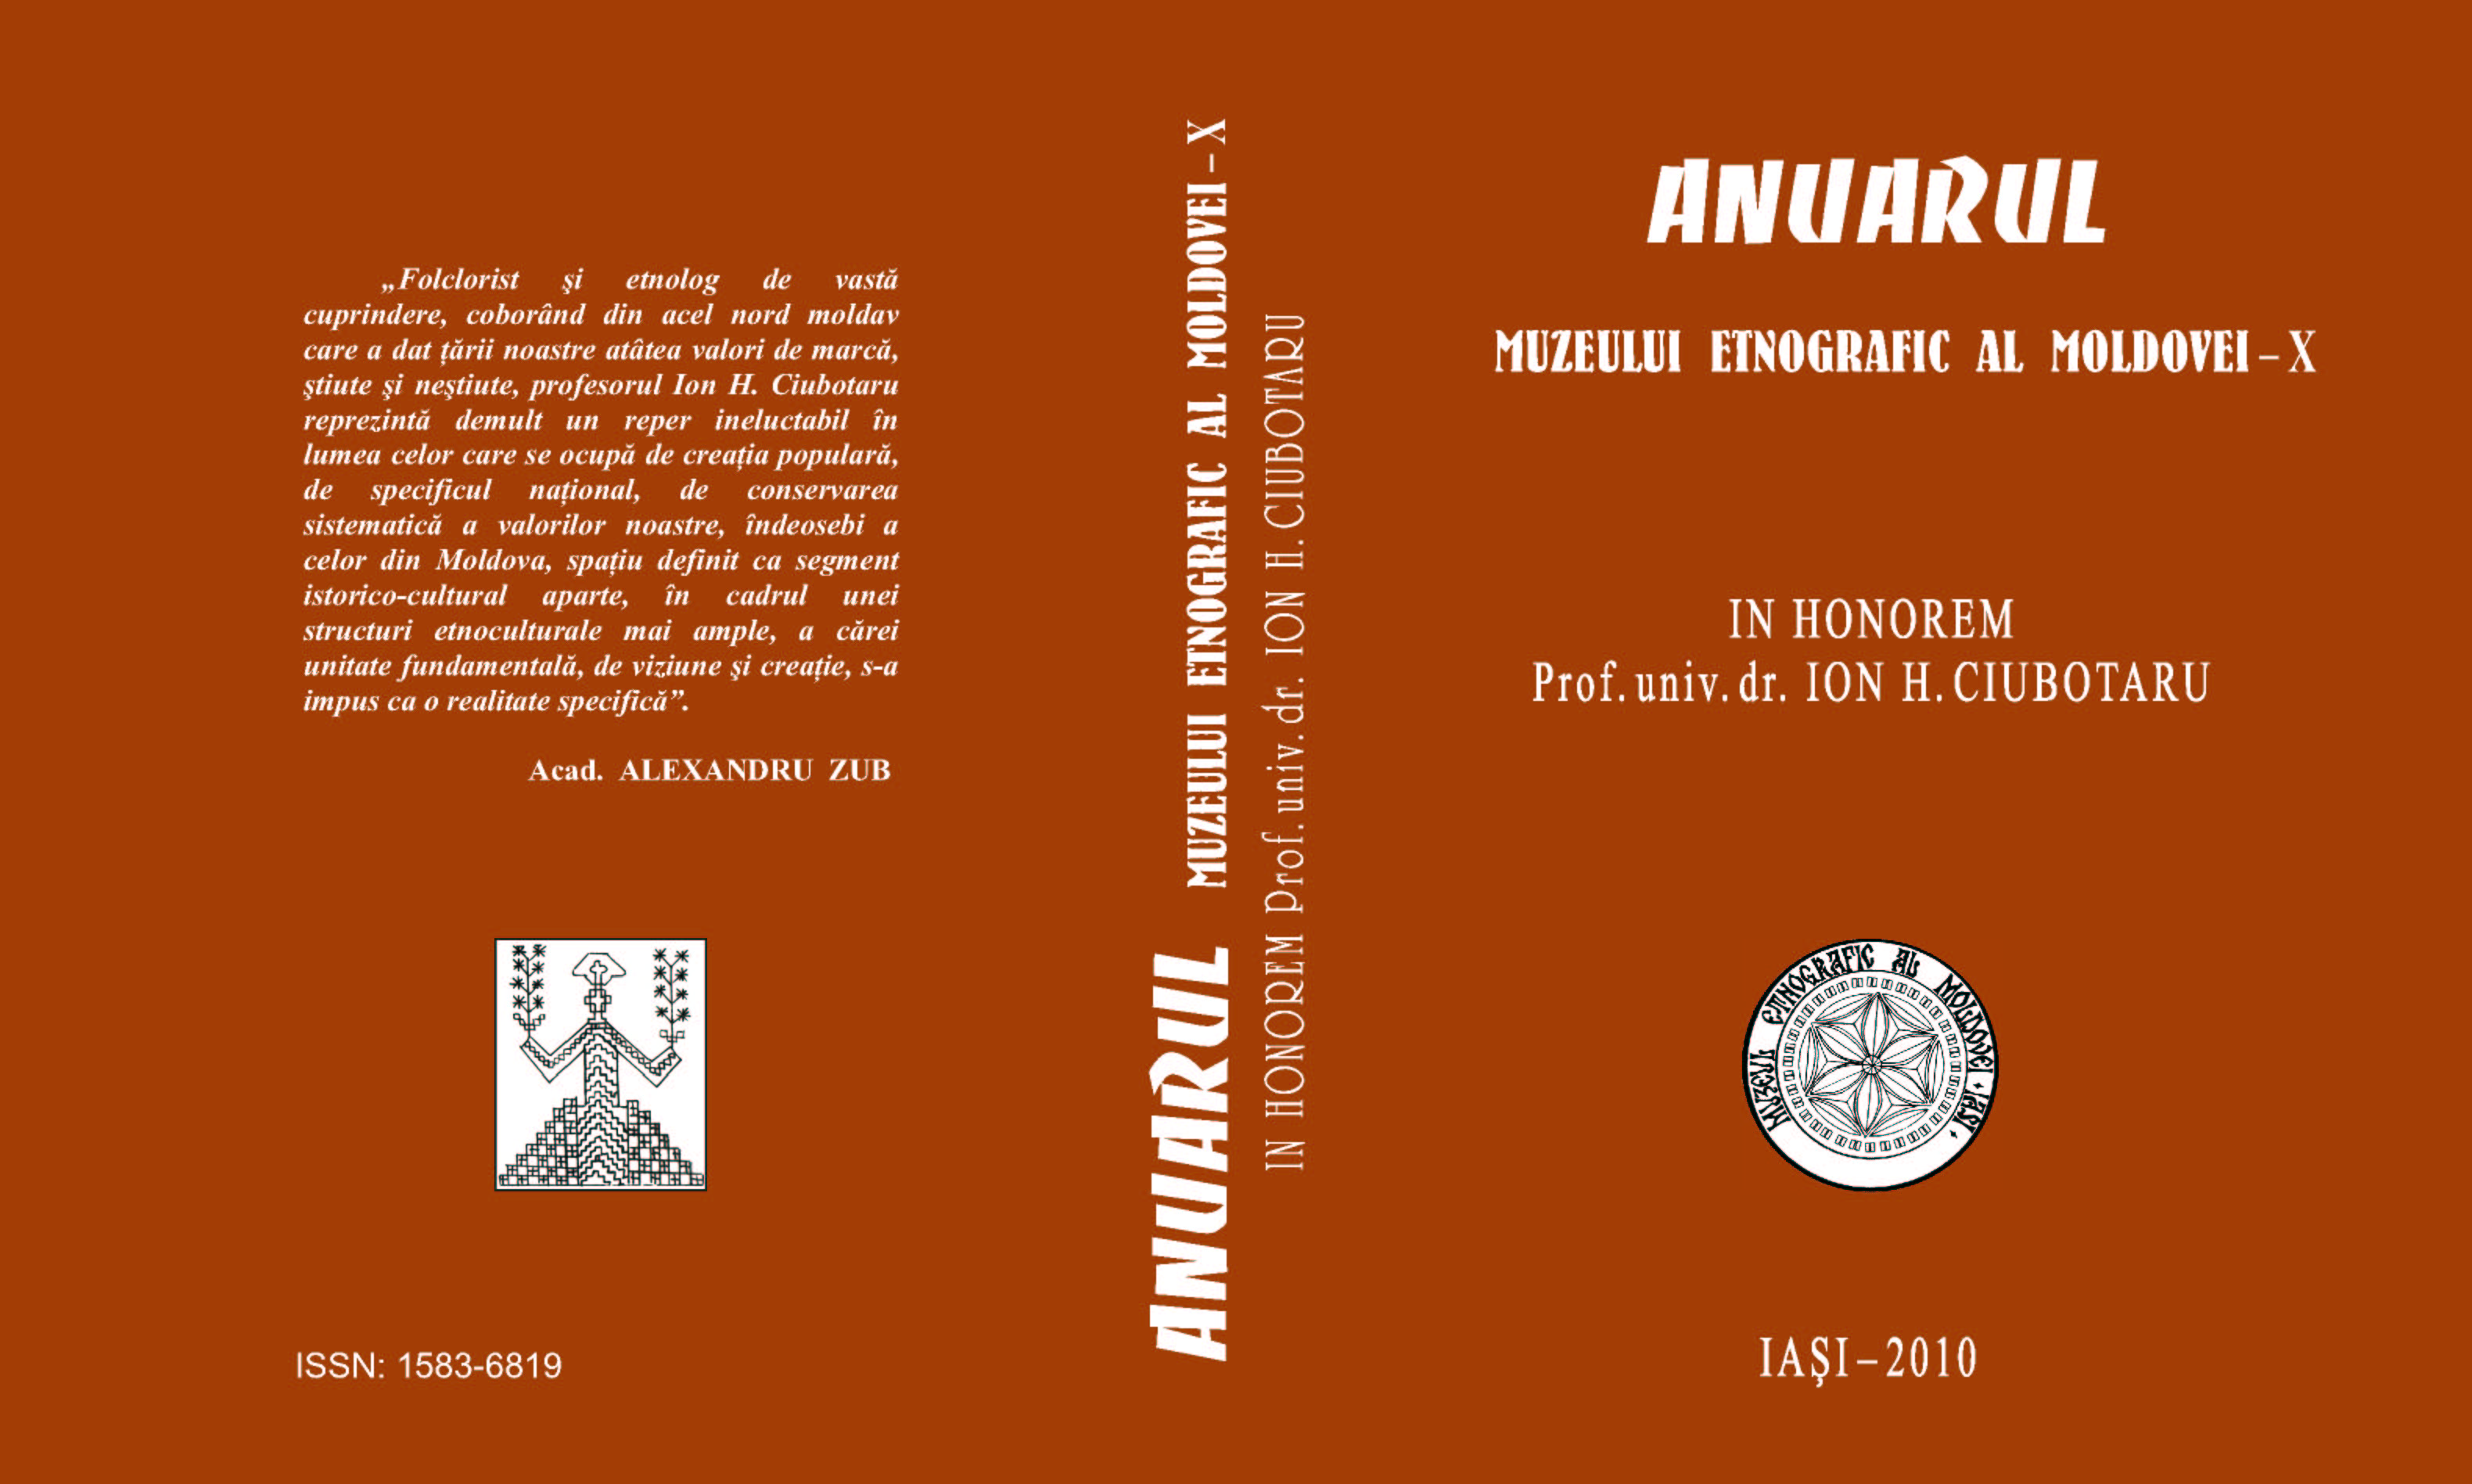 Ritual and Celebratory Aspects of Mărţişor Cover Image